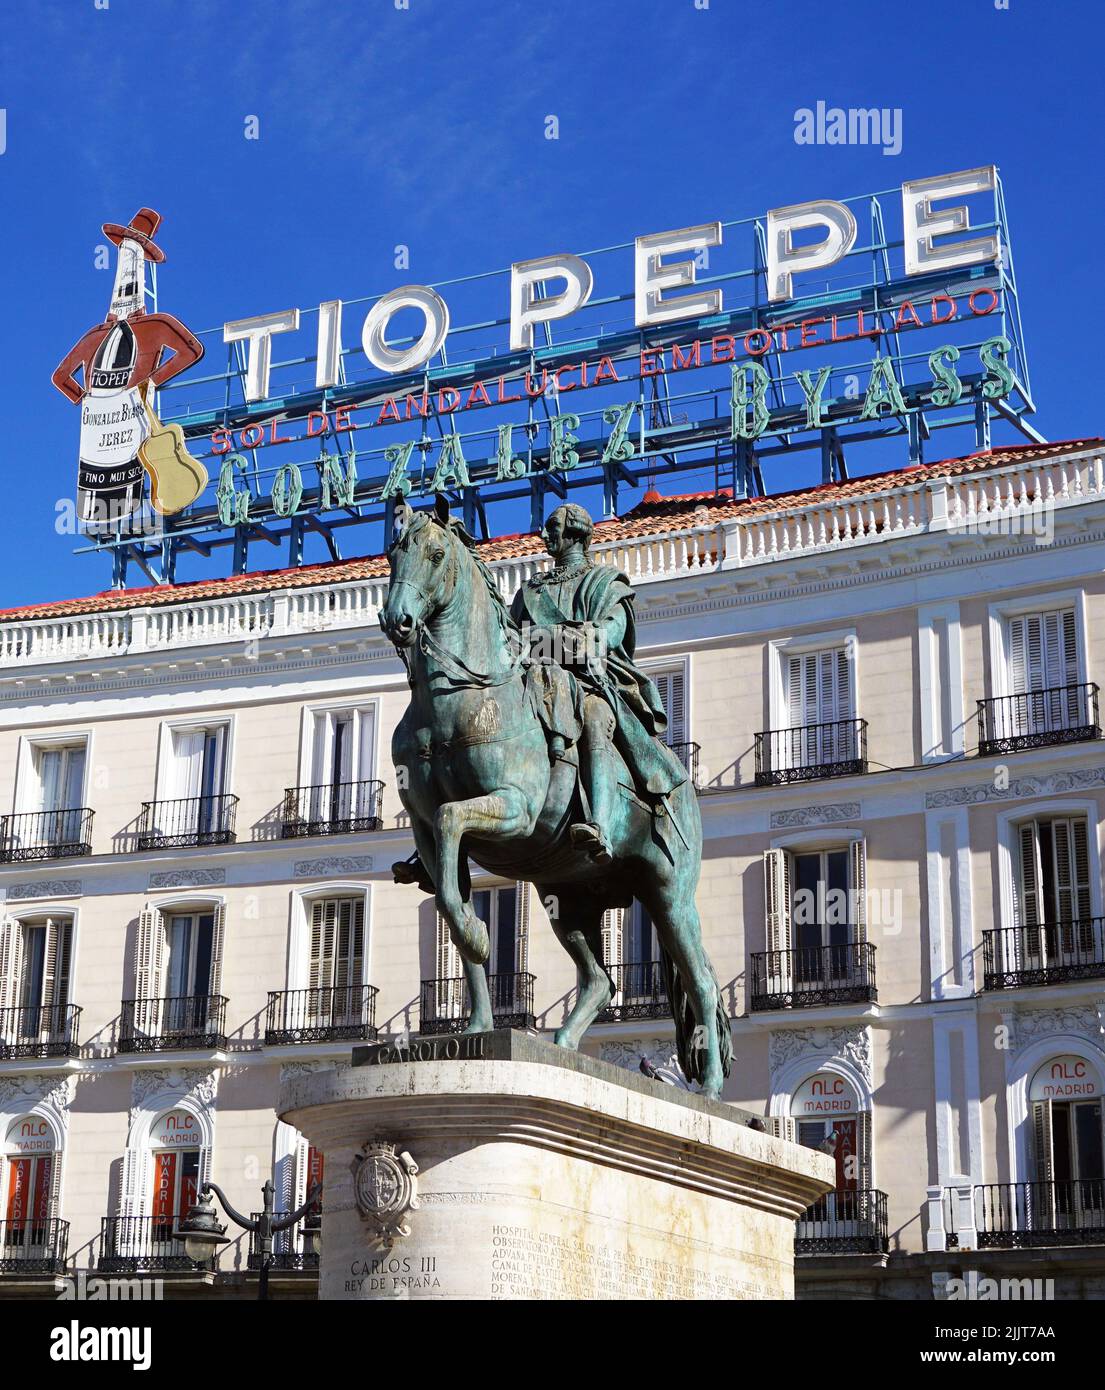 Monumento al Rey Carlos III en la Plaza de la Puerta del Sol, Madrid, España Foto de stock